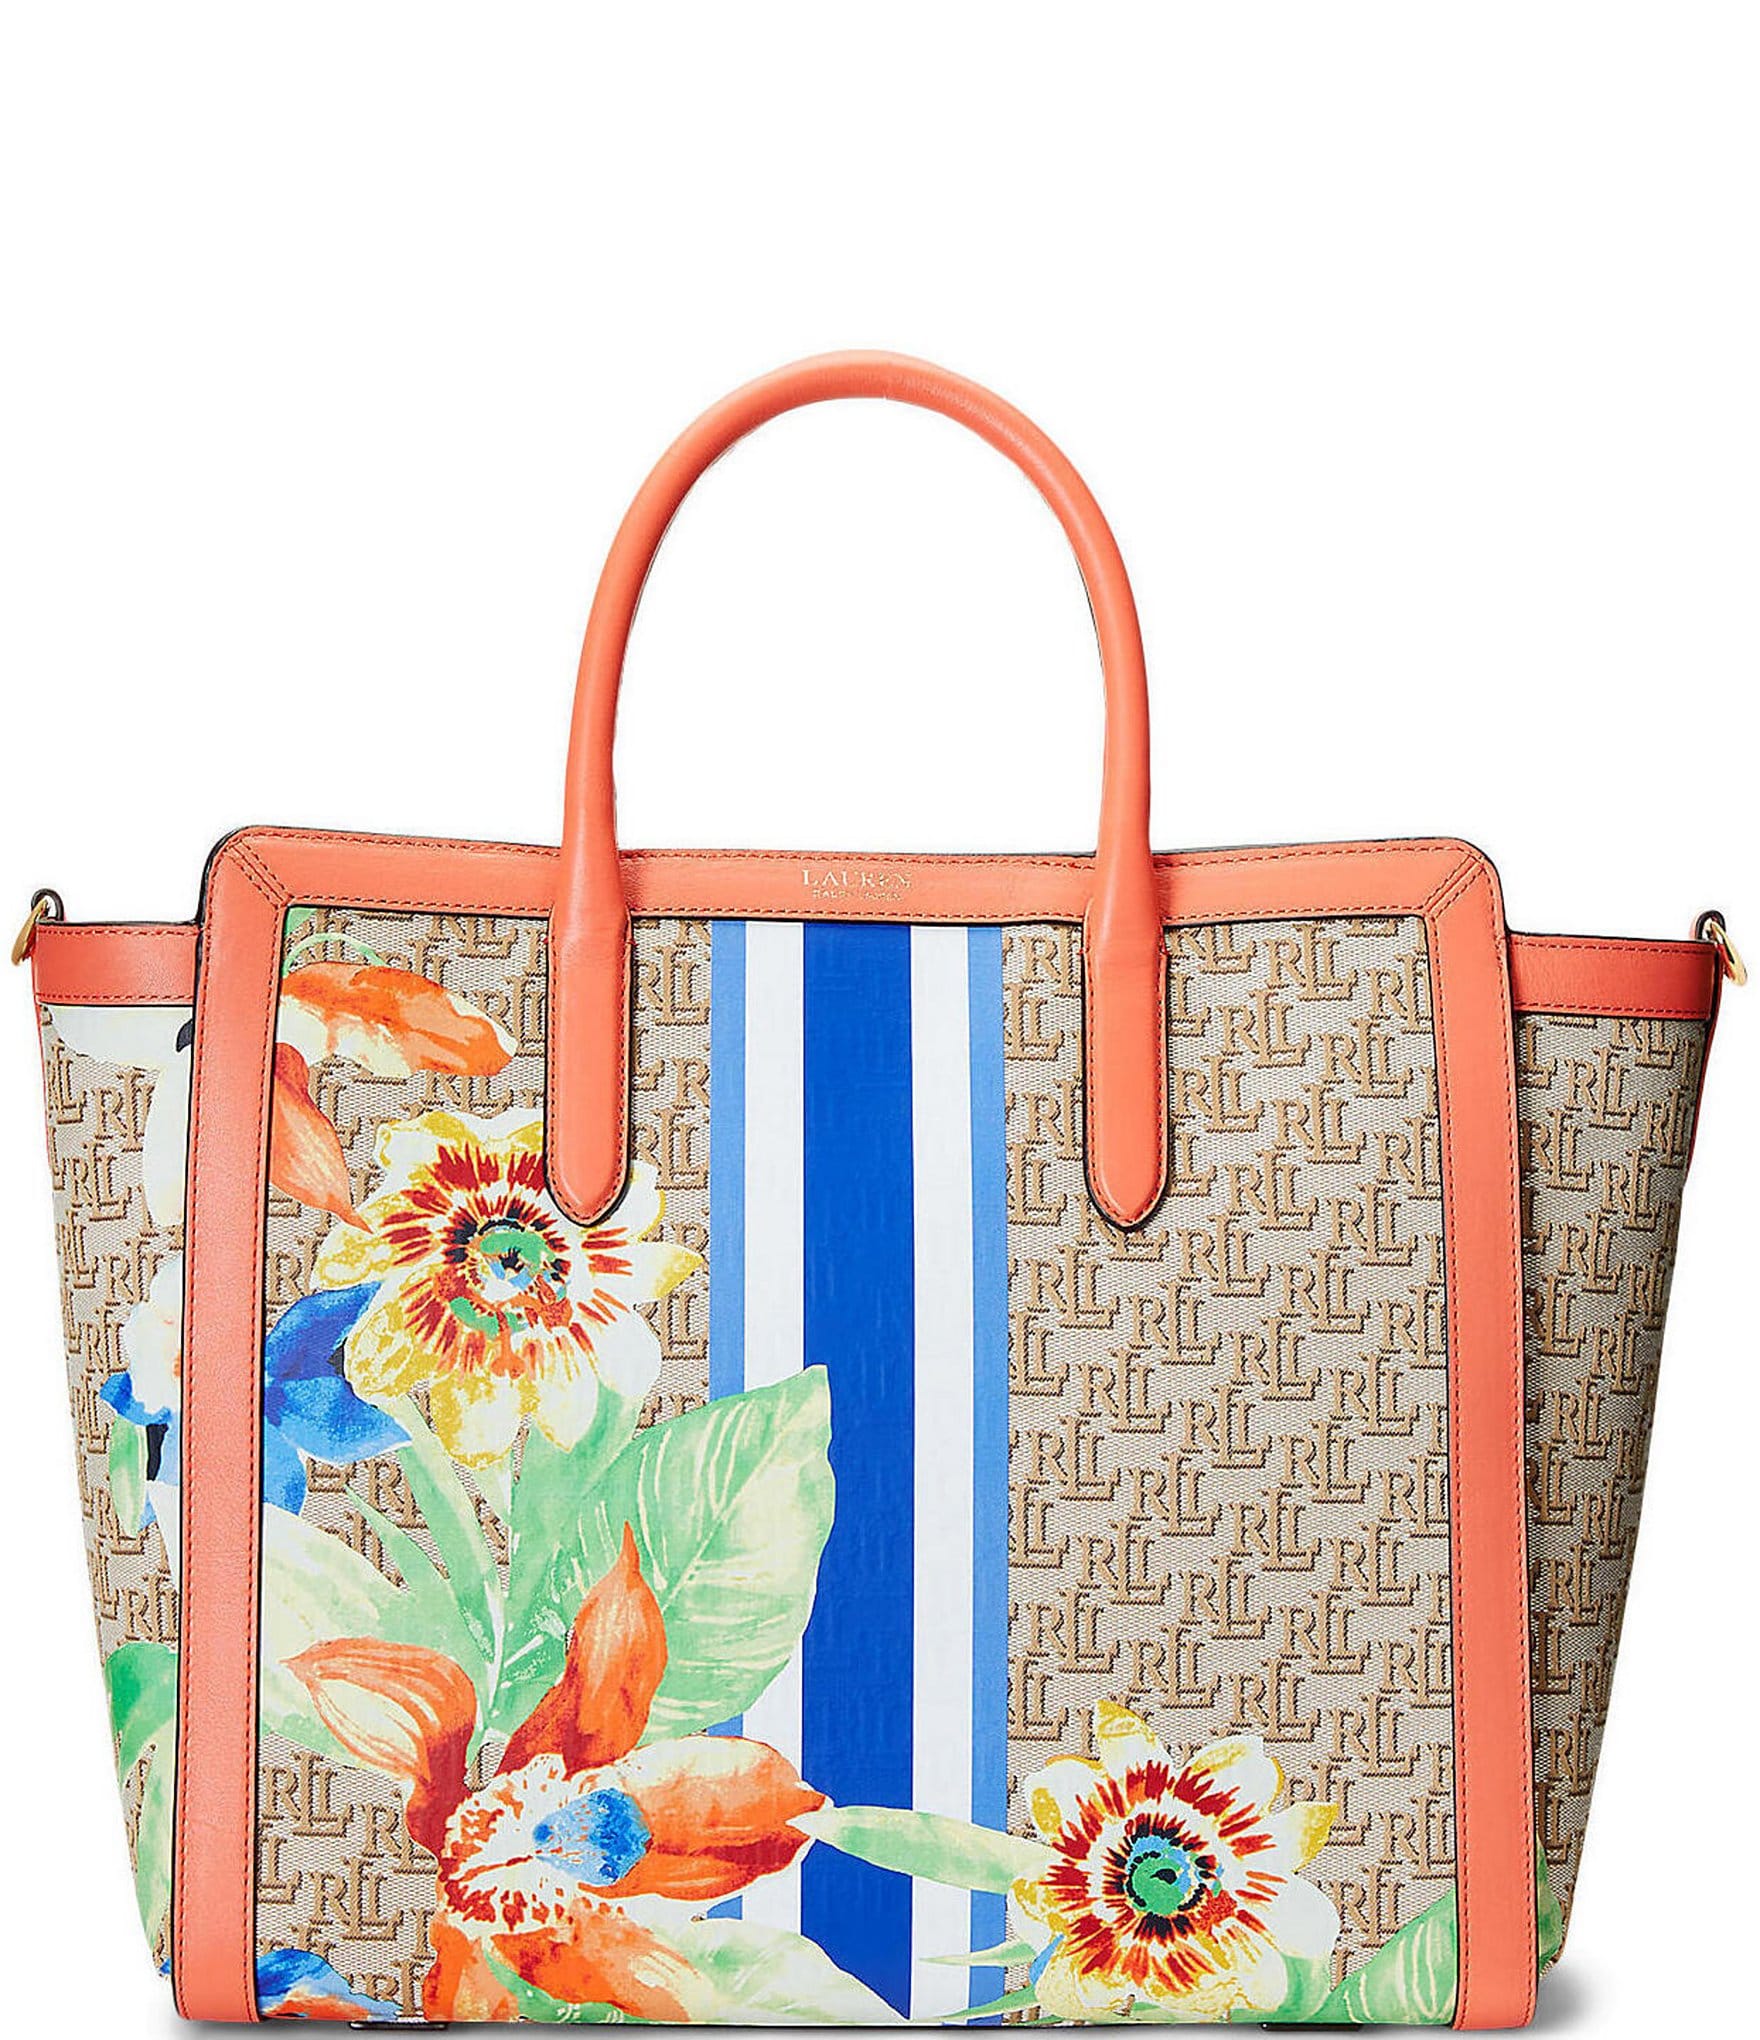 Lauren Ralph Lauren Handbags | Dillard's